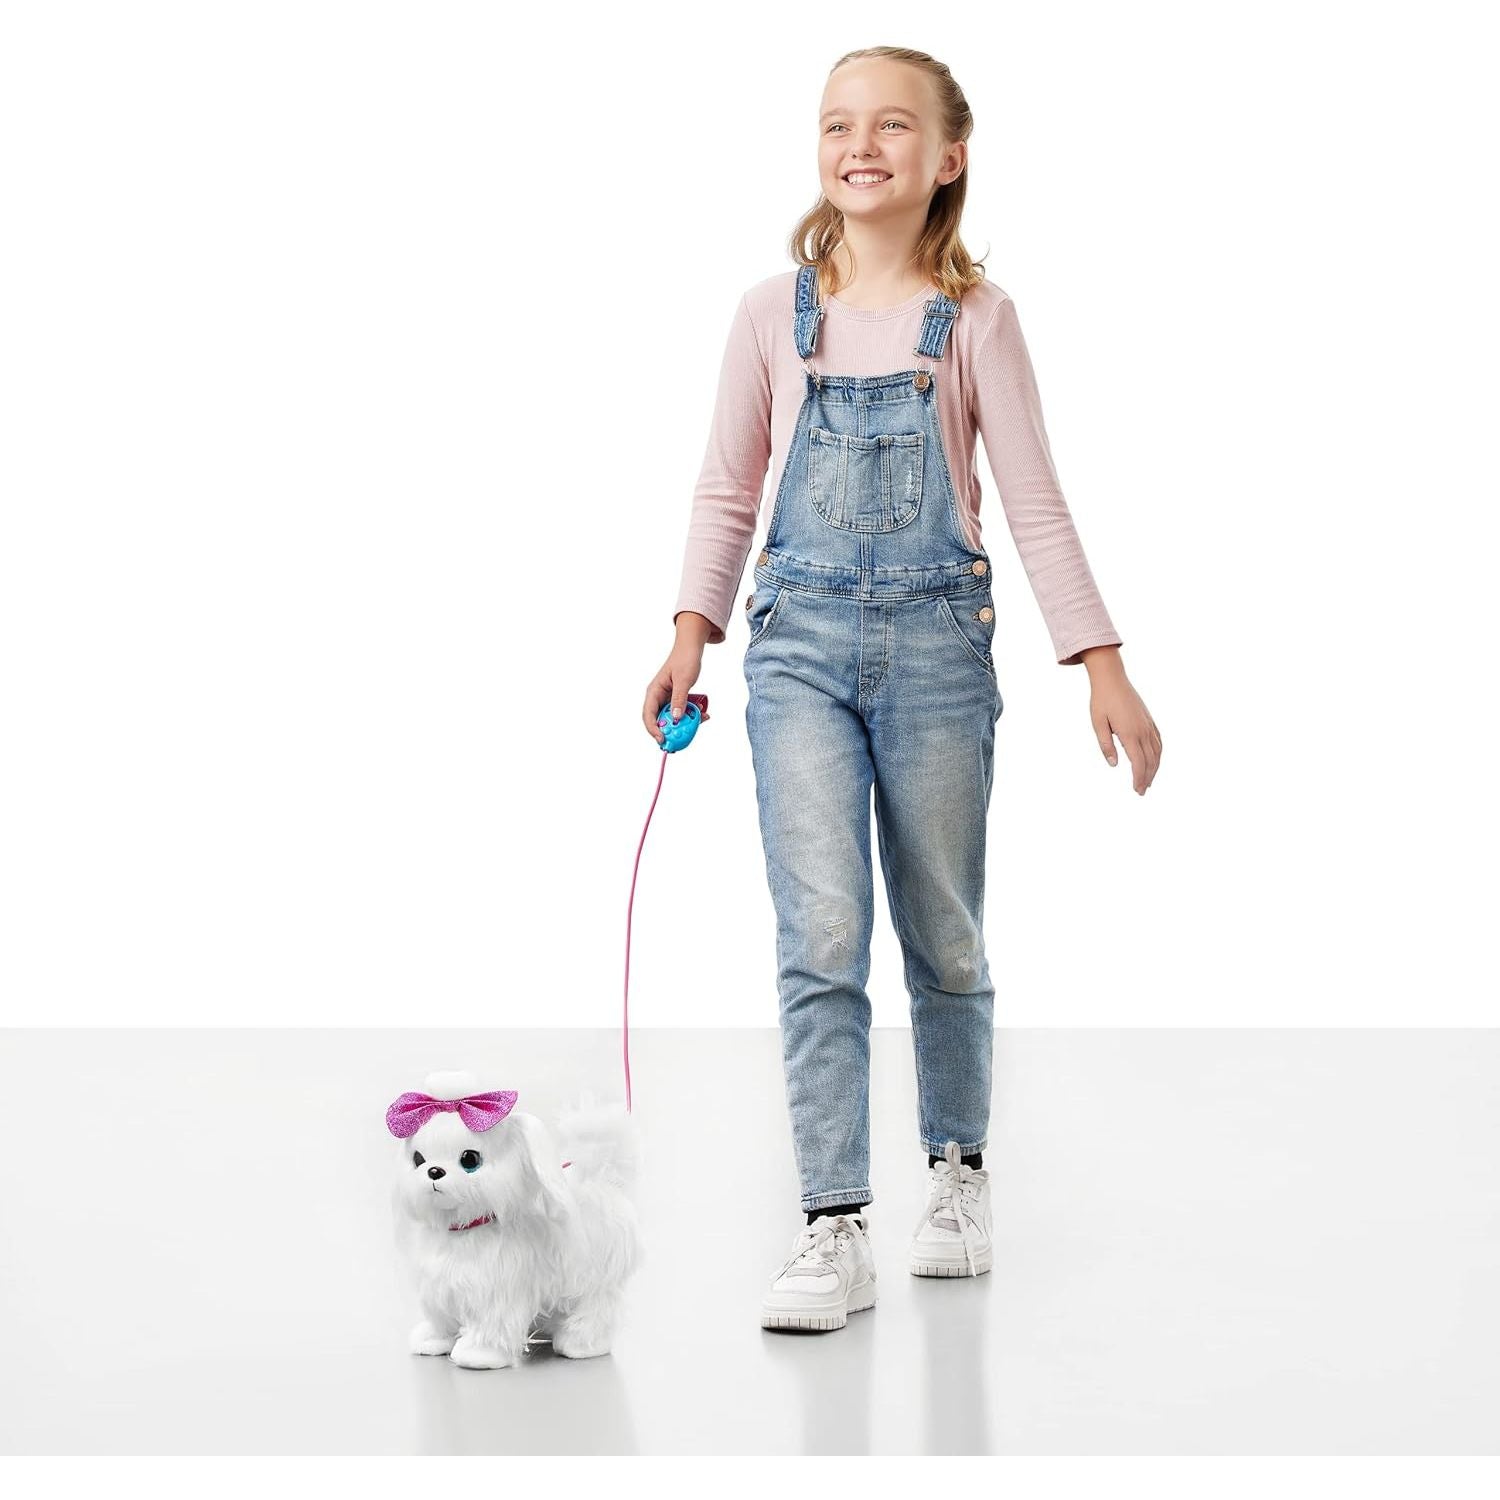 زورو بيتس ألايف ليل باو الكلب التفاعلي الذي يمشي ويهتز وينبح، حيوان أليف تفاعلي من القطيفة